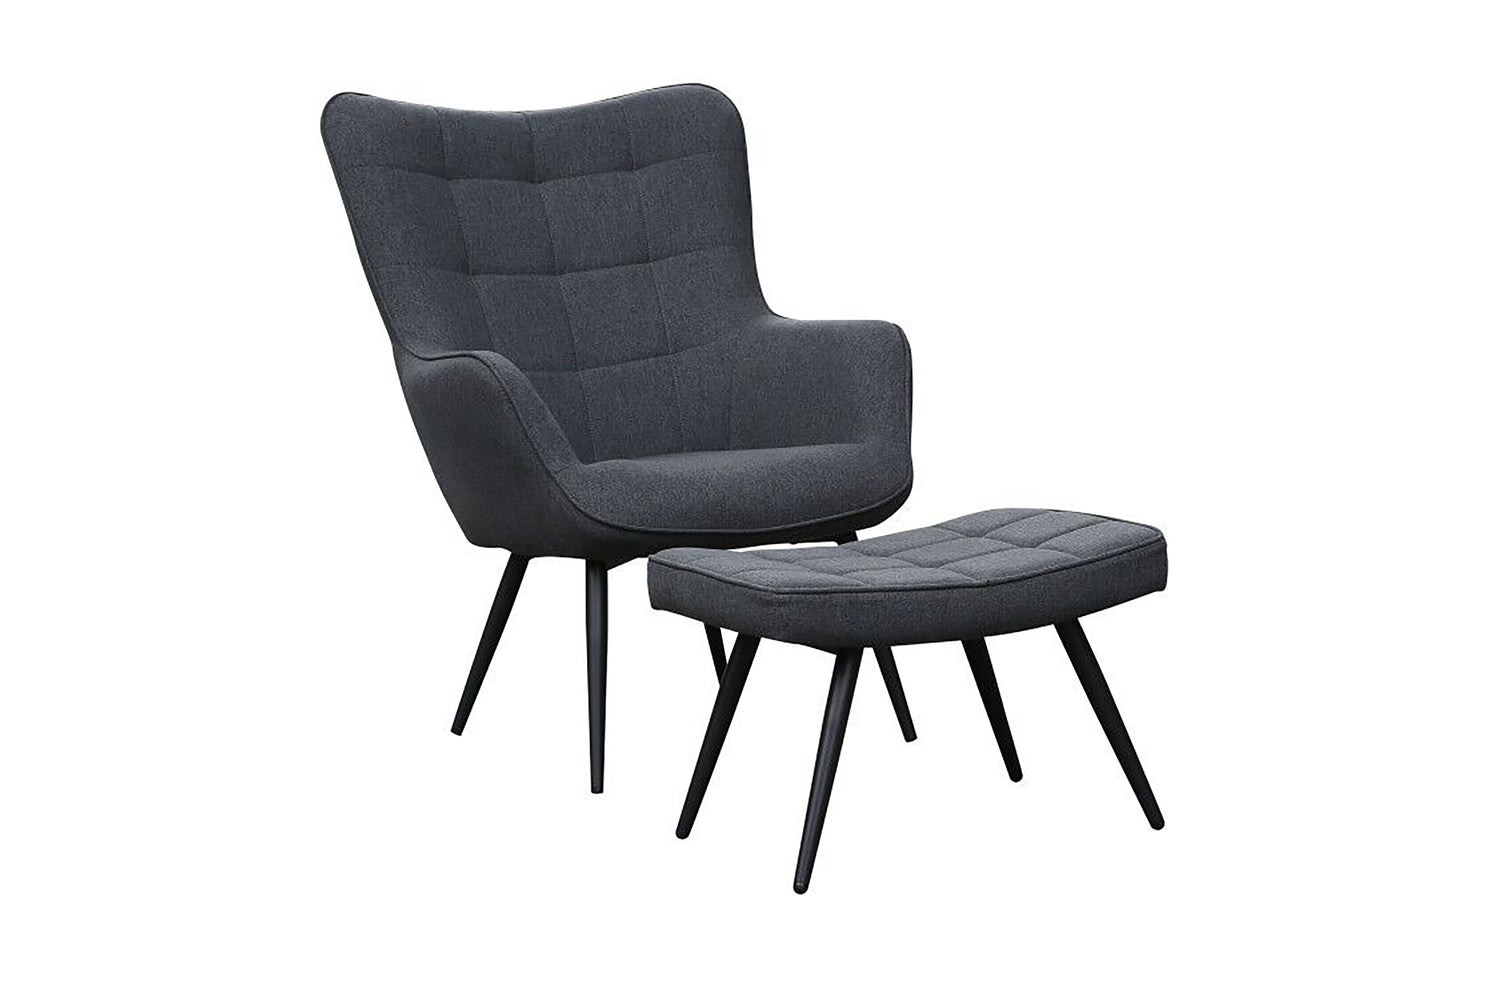 UTA Sessel, Gestell in schwarz, grau, sandfarben byLIVING oder – in schwarz, grün